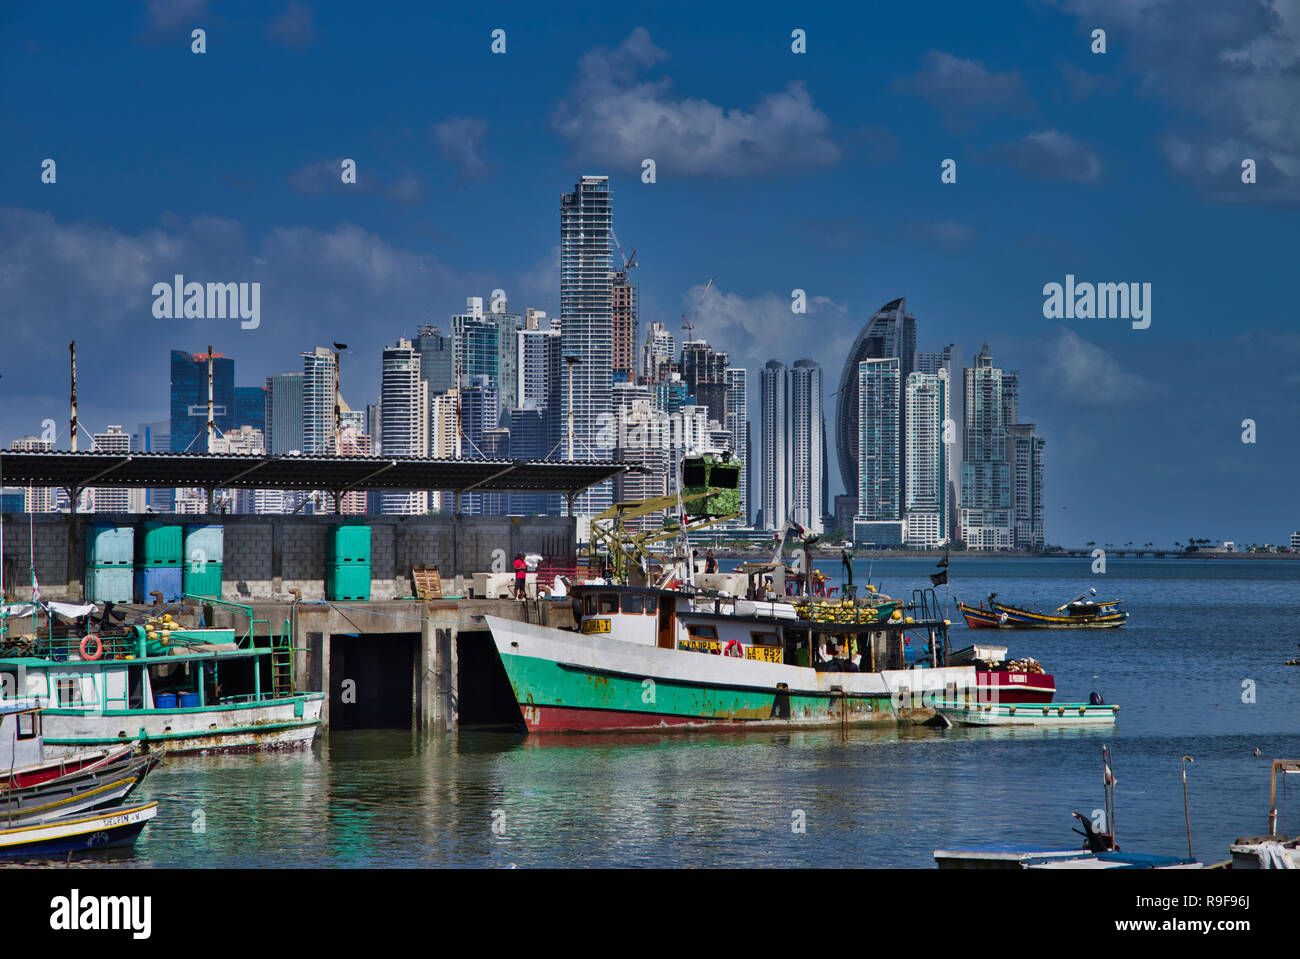 La ville de Panama, Panama, Horizon Costal avec gratte-ciel Banque D'Images